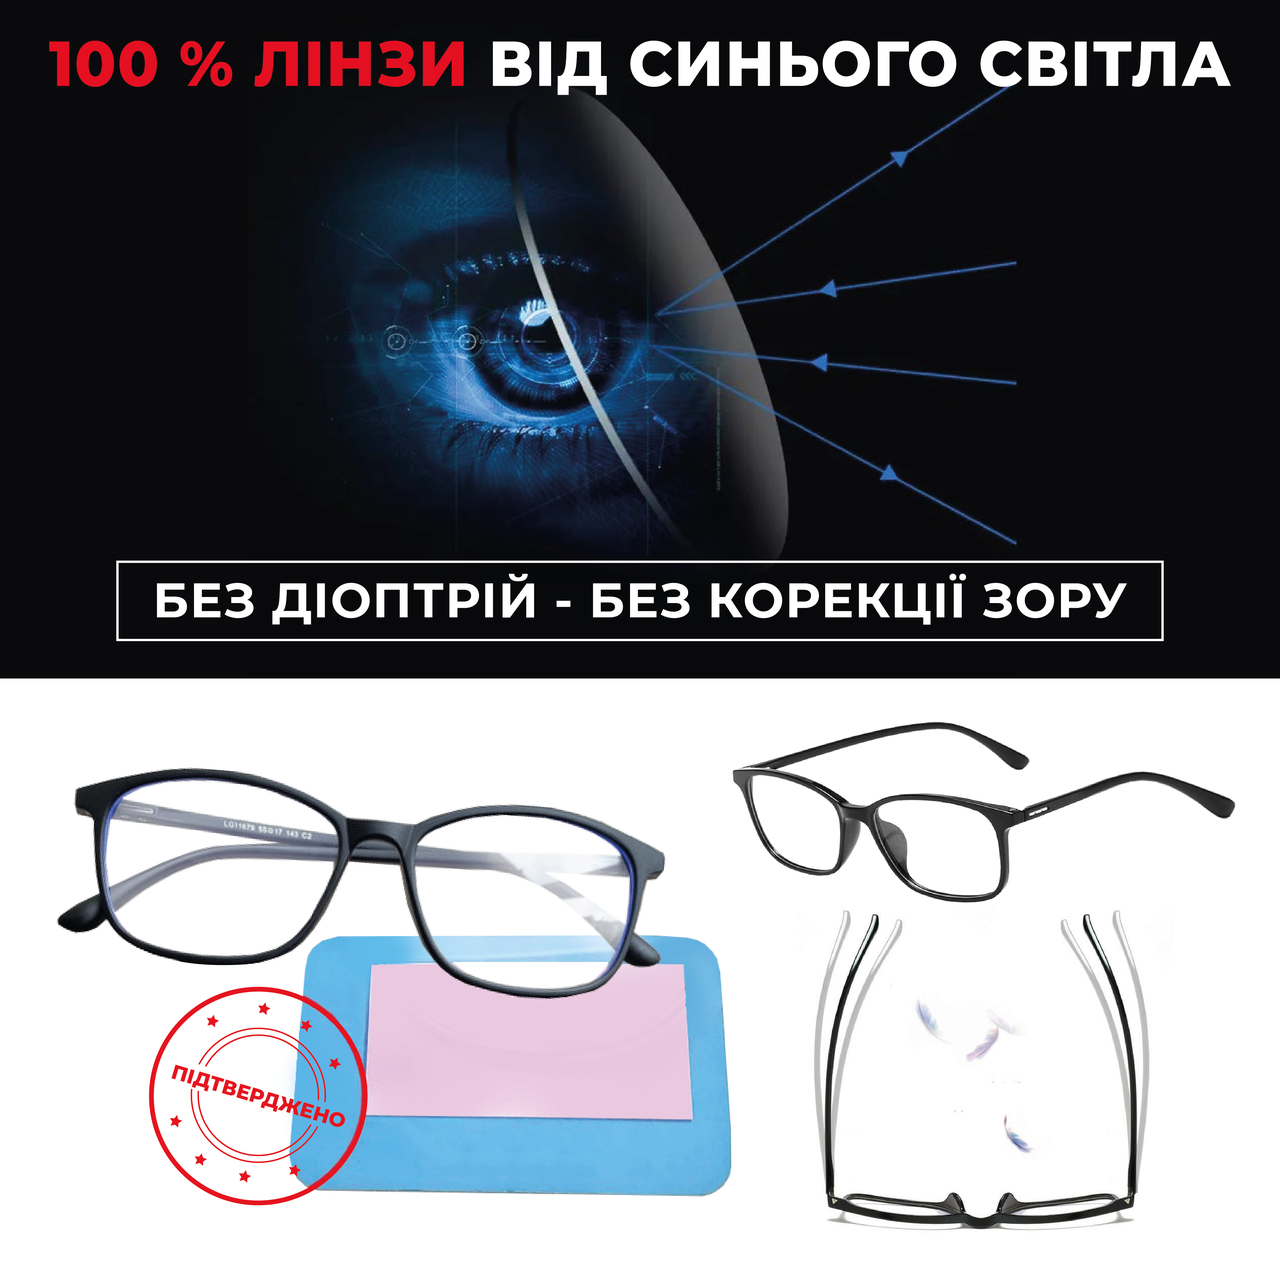 Комп'ютерні окуляри універсальні для захисту очей від УФ-променів Mod3560-2 без діоптрій